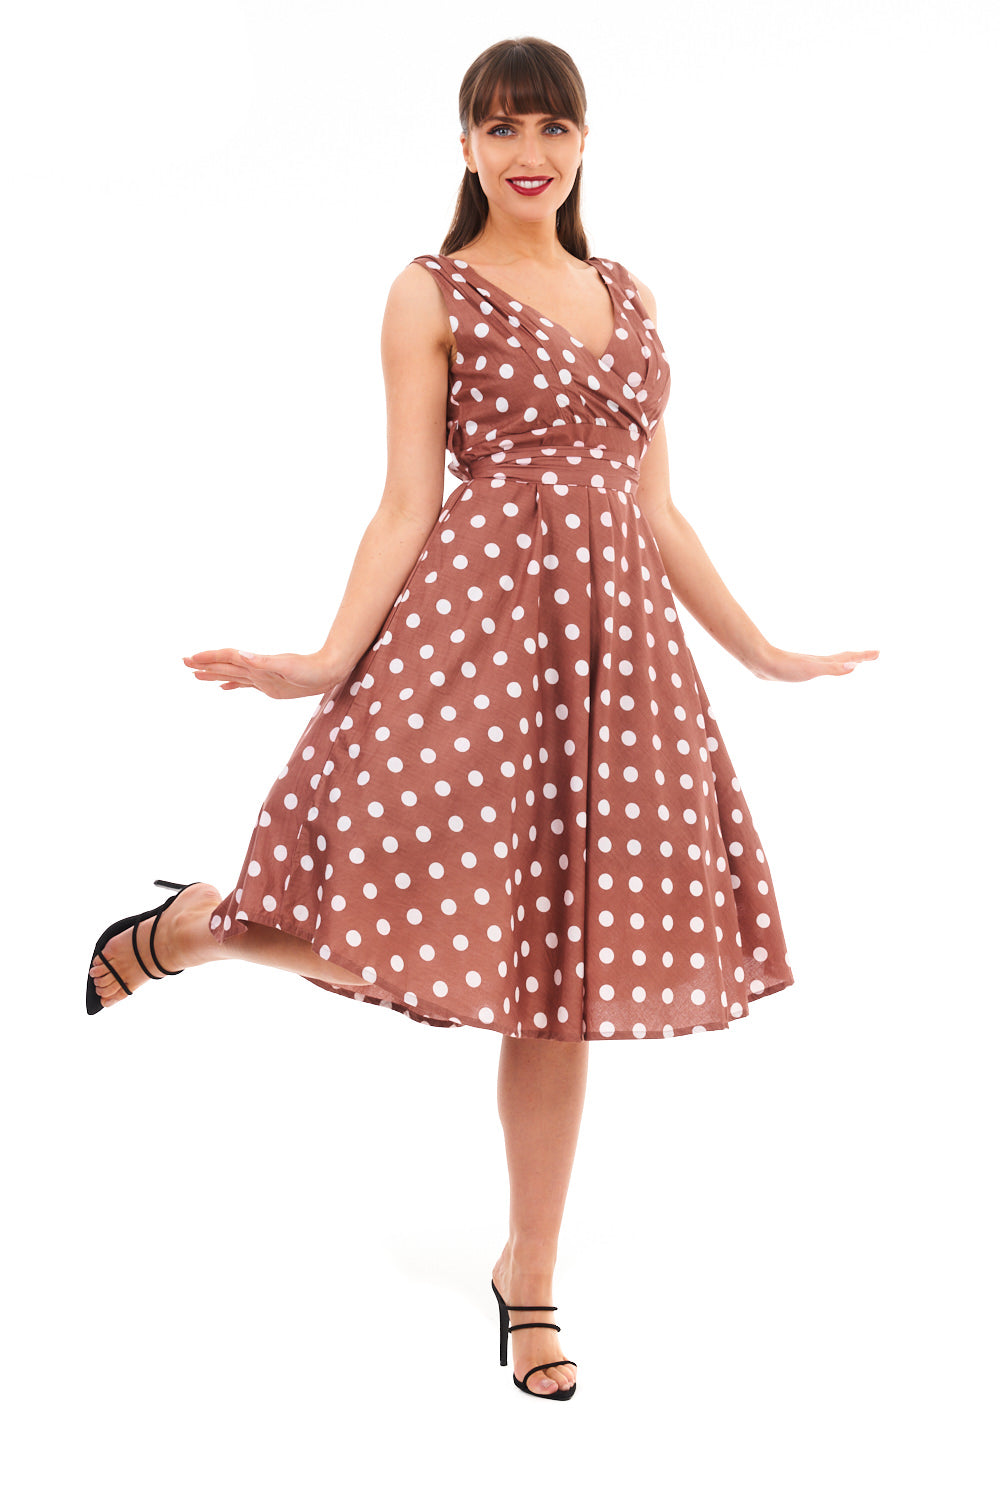 Ladies Retro Vintage 1950's Rockabilly Swing Polka Dot Dress in Beige